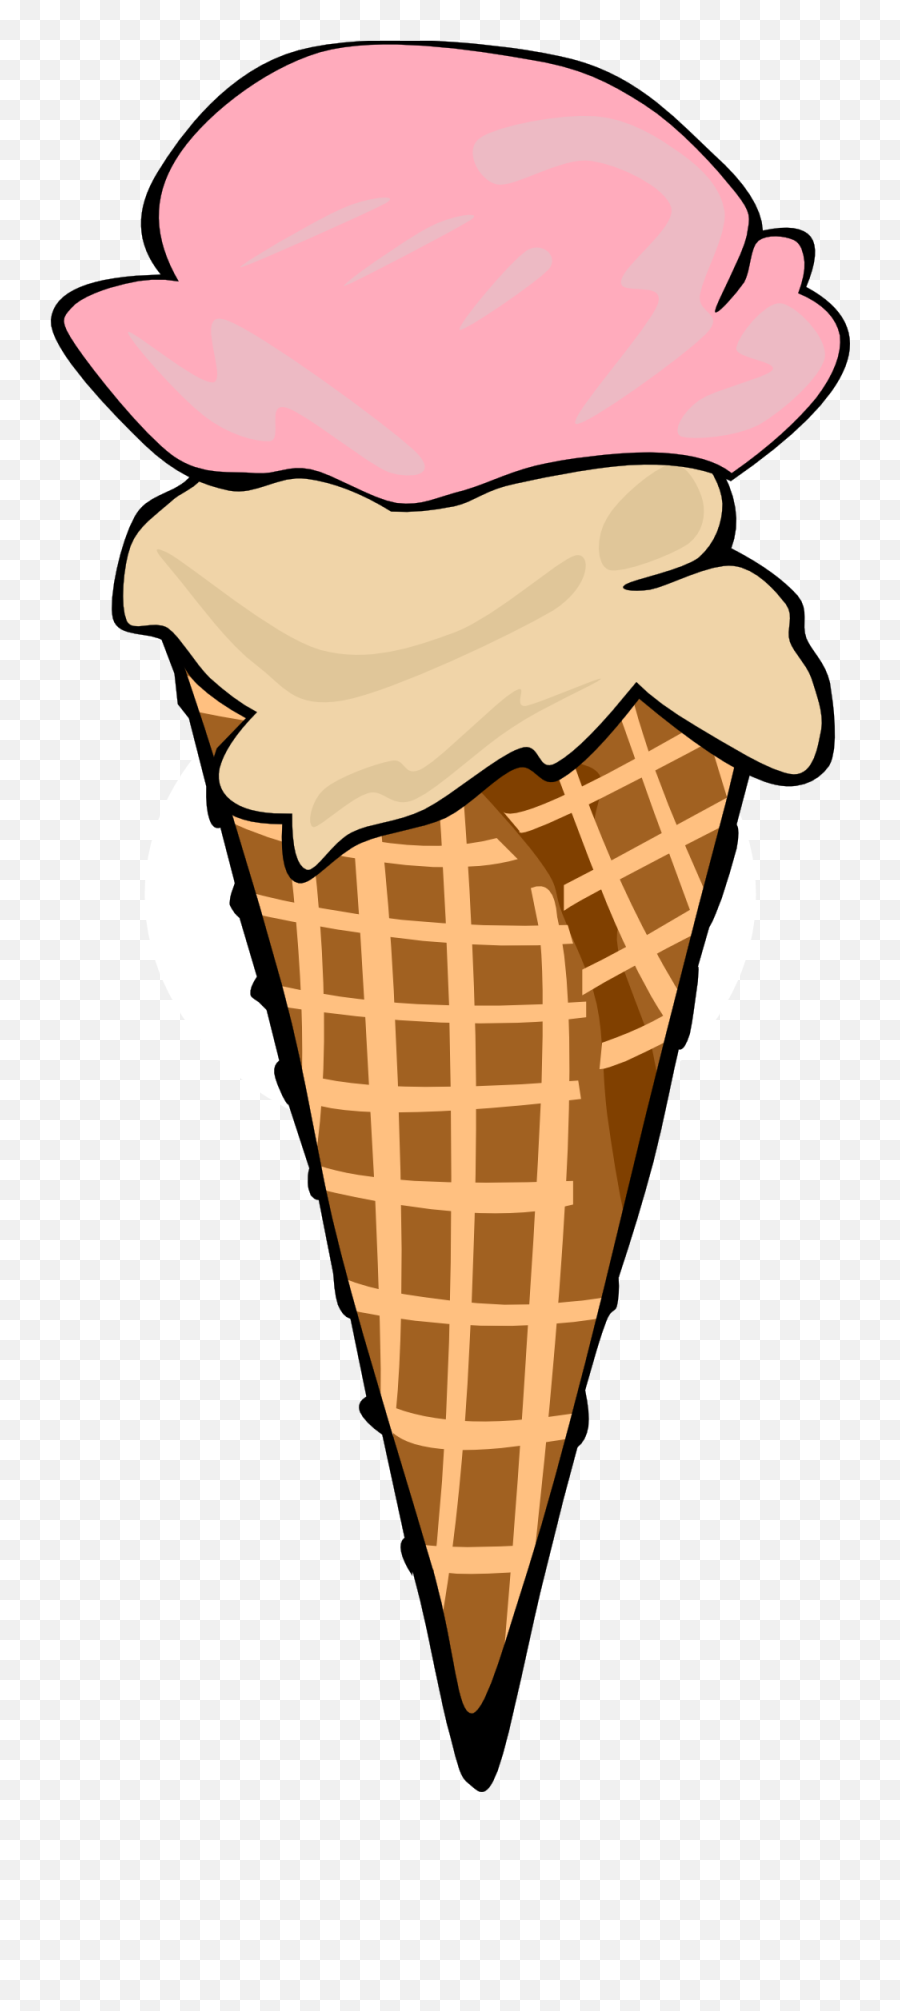 Ice Cream Cone Clip Art 3 - Ice Cream Cone 2 Scoops Clipart Emoji,Ice Cream Sun Emoji